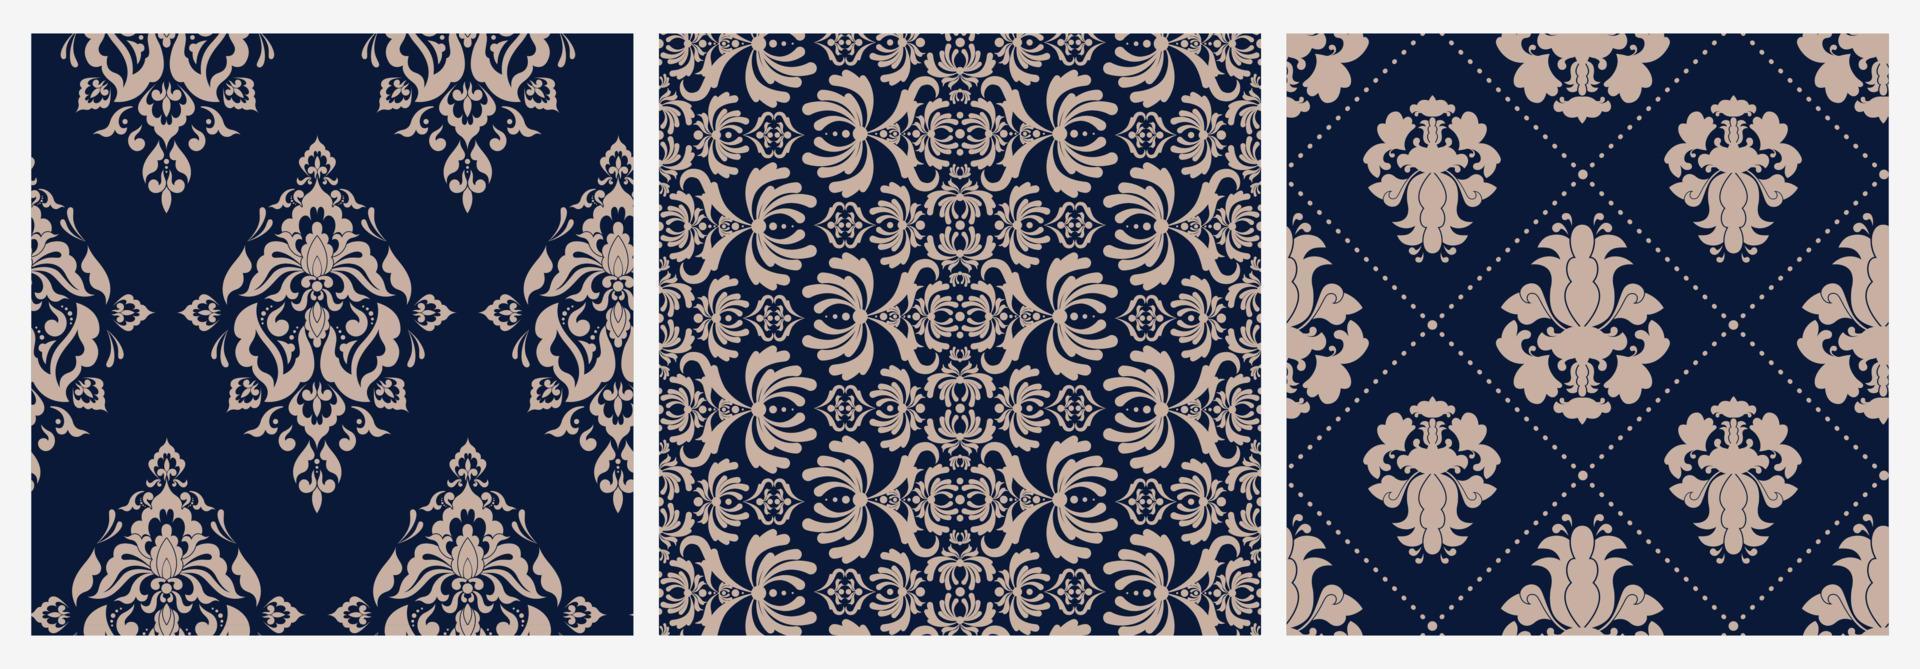 Satz bunte Damastblumen-viktorianisches nahtloses Muster. Sammlung von Luxus Retro Ornament Vektor flache Illustration. farbige Vintage königliche Barock abstrakte Textur Tapete auf blauem Hintergrund